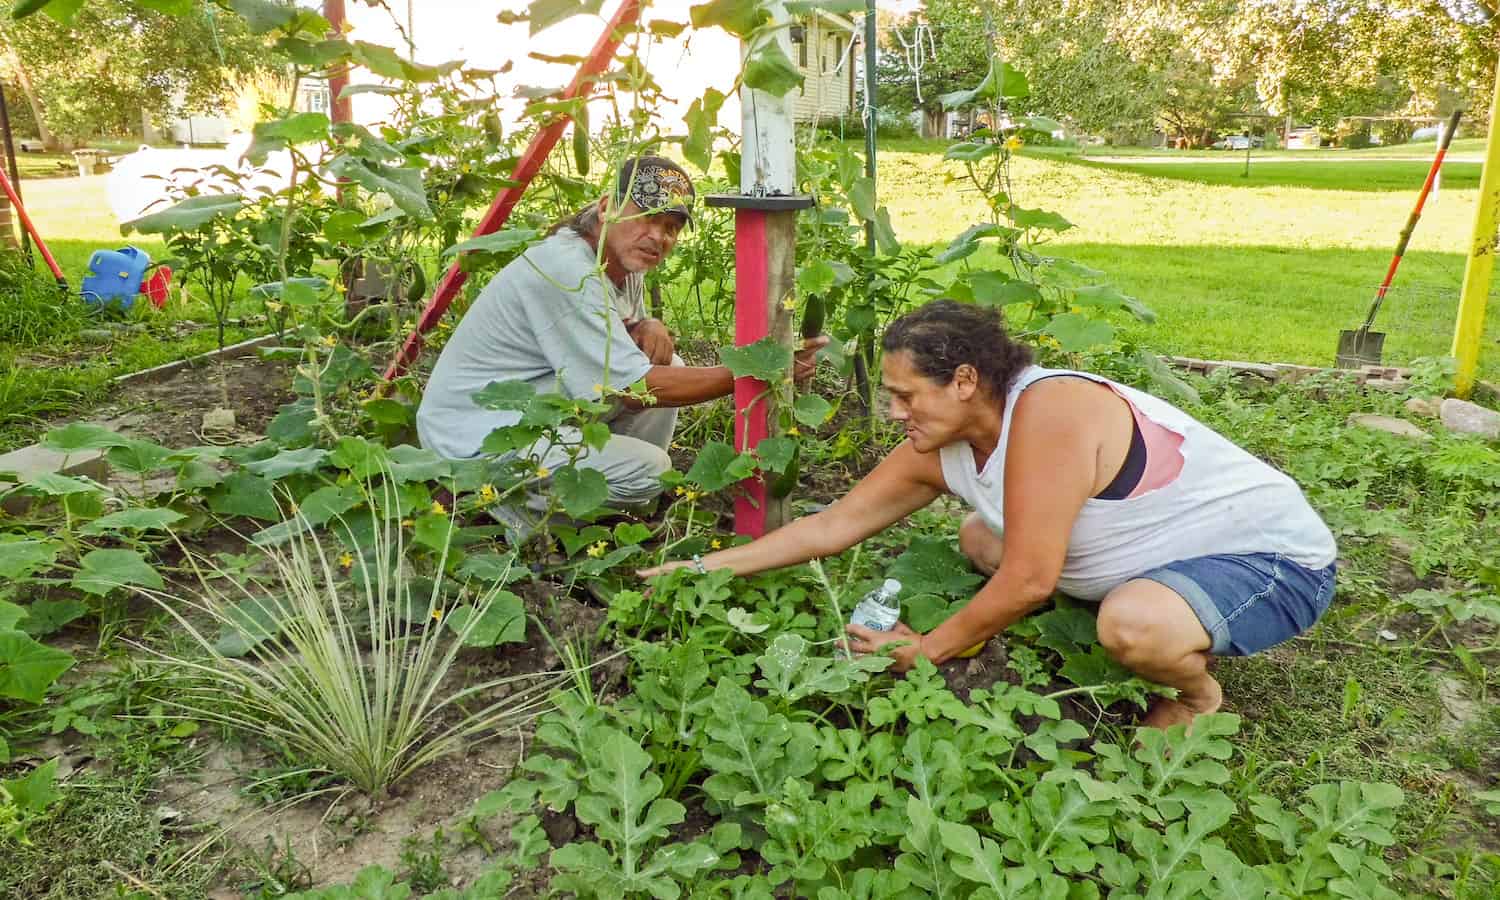 桑提人苏族社区希望振兴和加强传统的粮食和农业实践创建一个自给自足的食物系统。